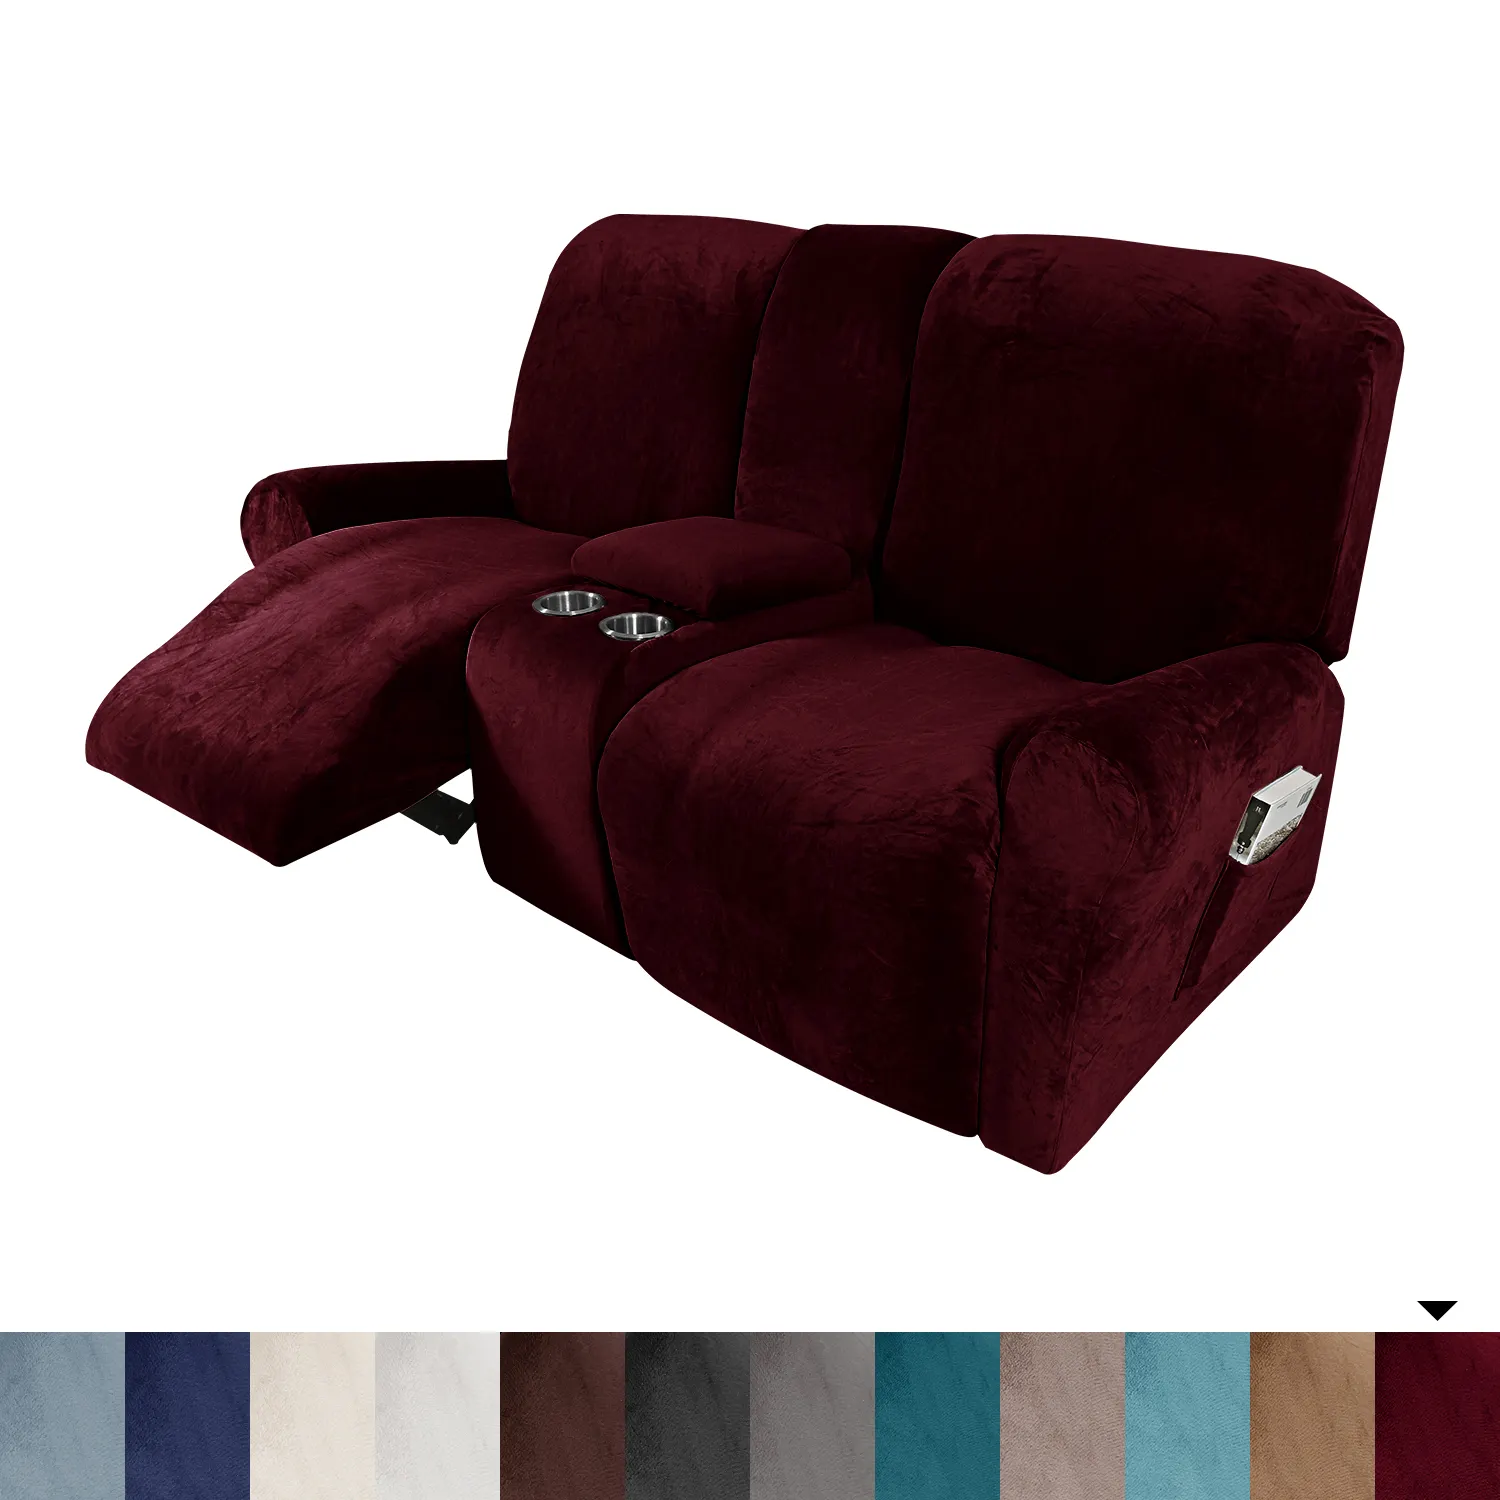 ผ้าหุ้มโซฟา8ชิ้น,ผ้ากำมะหยี่ยืดได้เบาะรองนั่งโซฟาปรับนอนได้เบาะกลางเก้าอี้เลานจ์